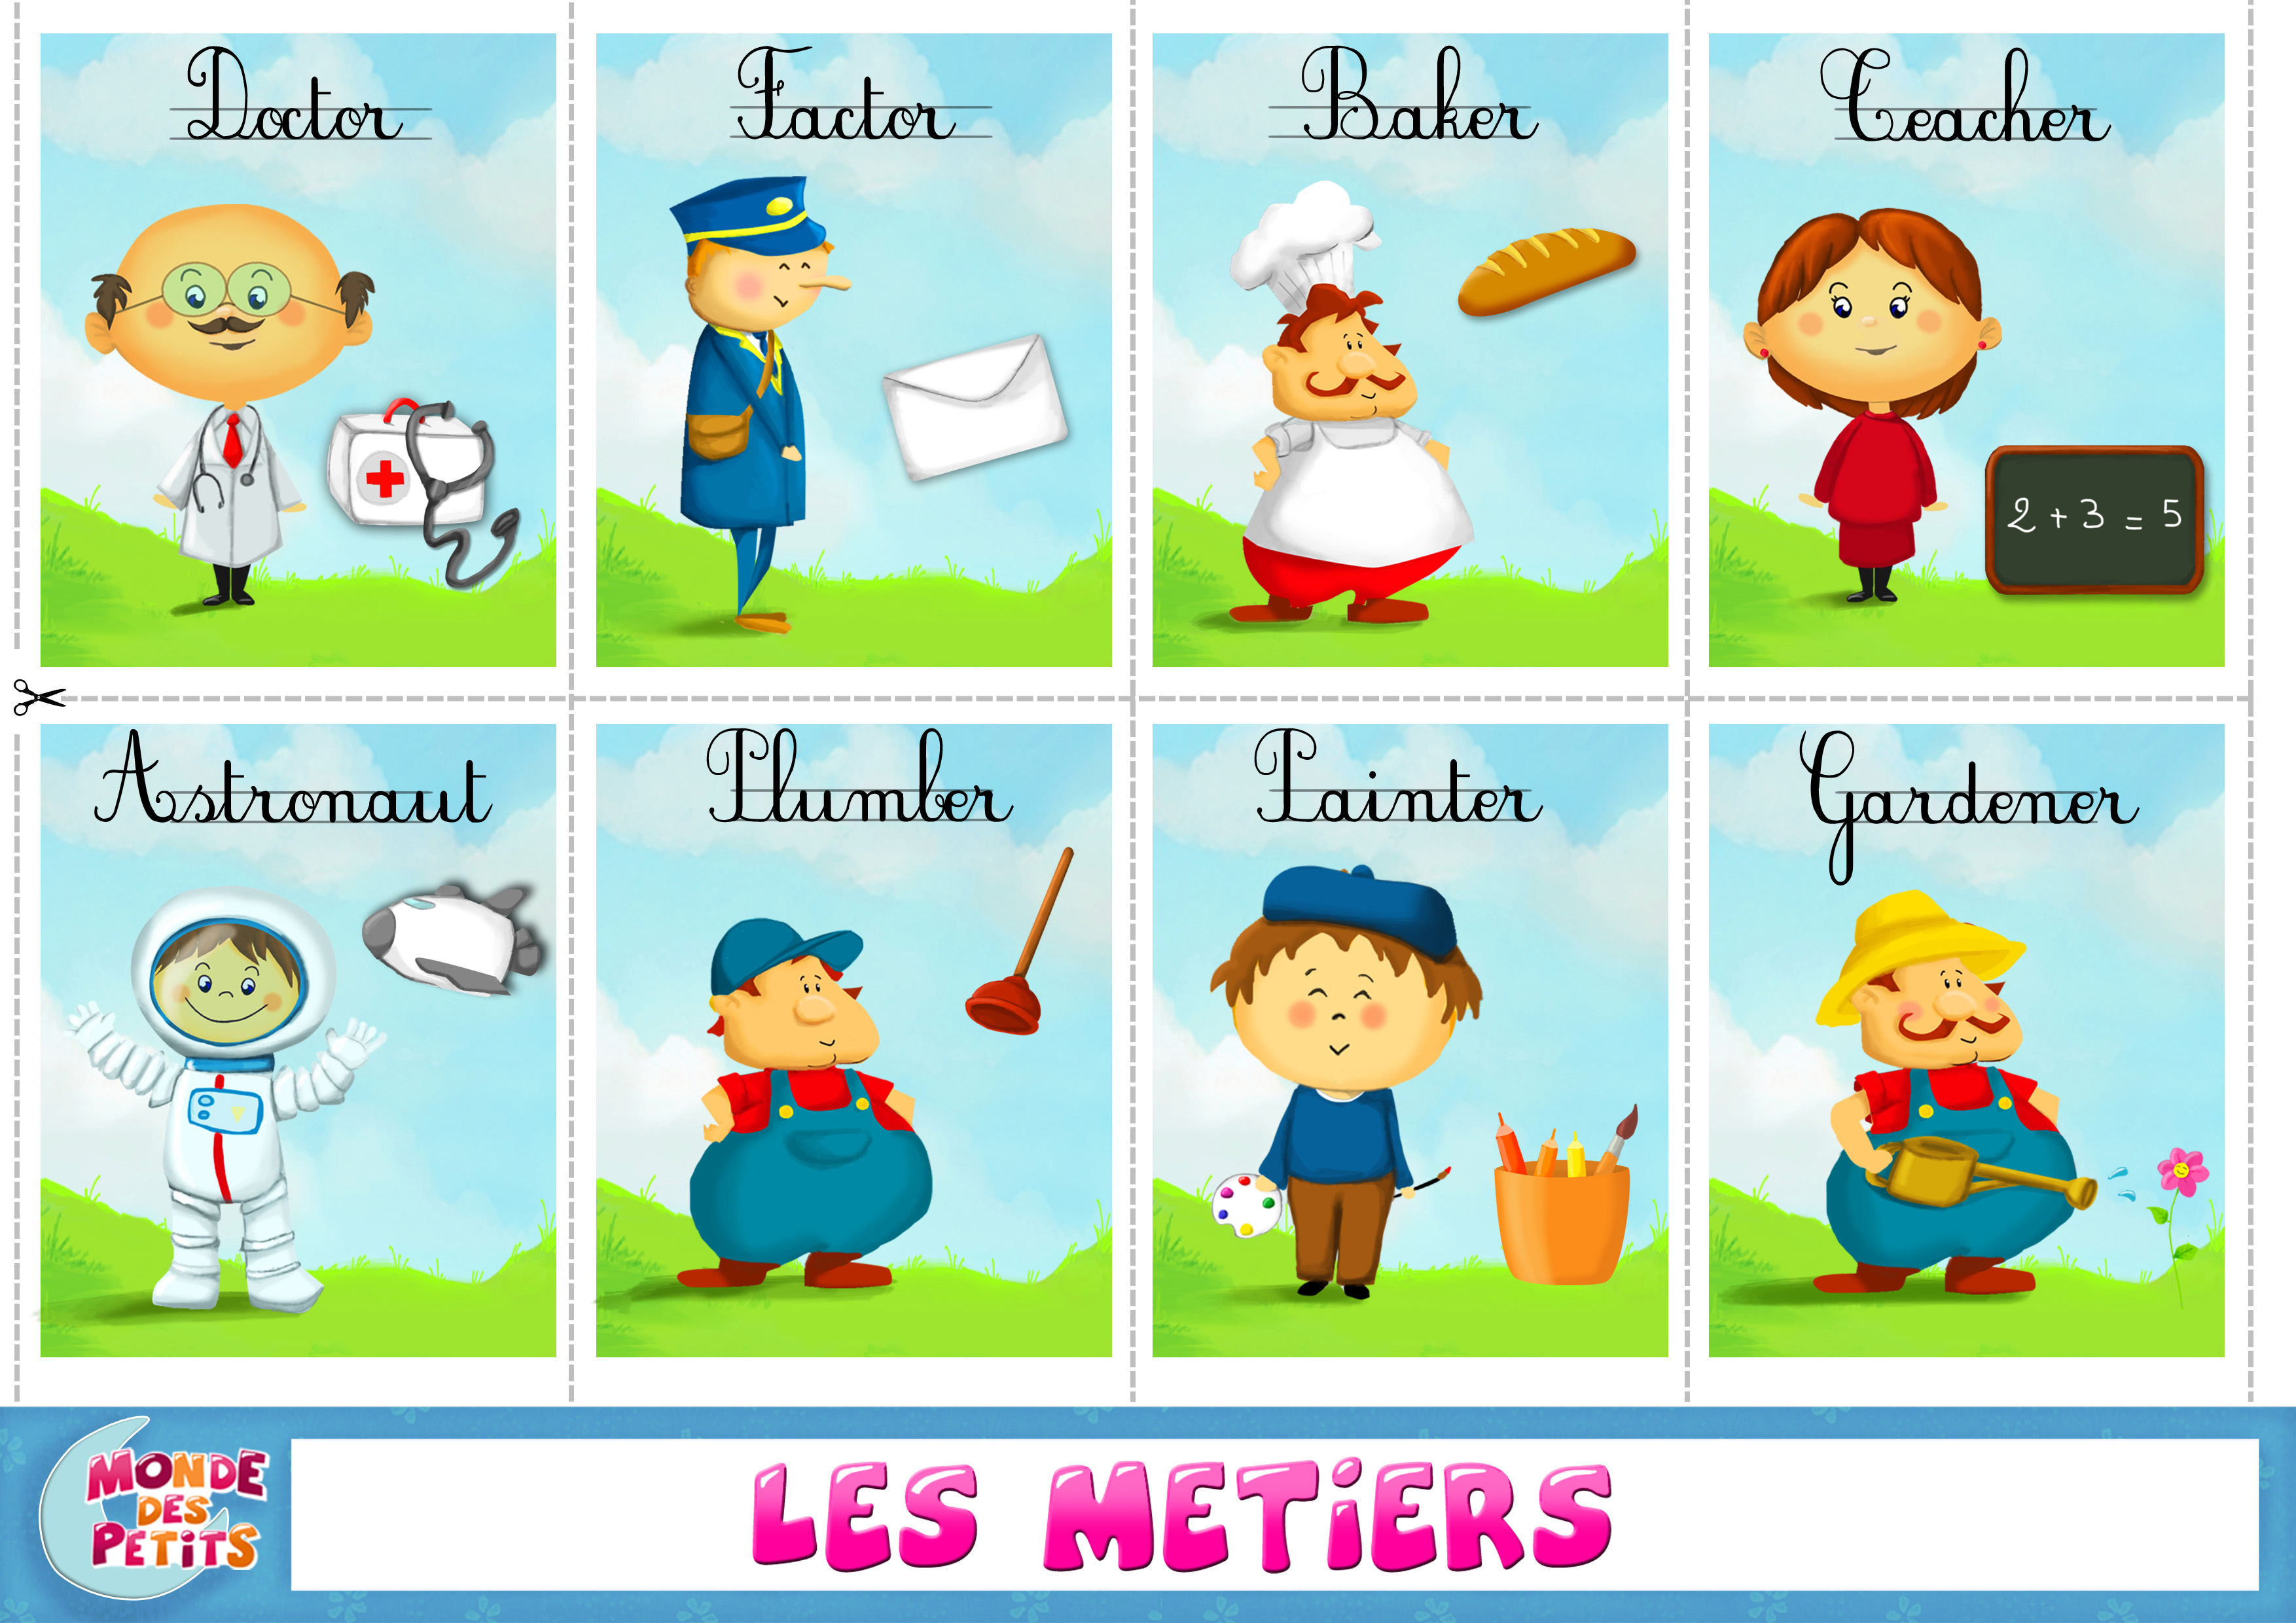 Series en francais. Профессии на французском языке. Профессии на французском карточки. Профессии на французском для детей. Карточки для малышей на французском языке.